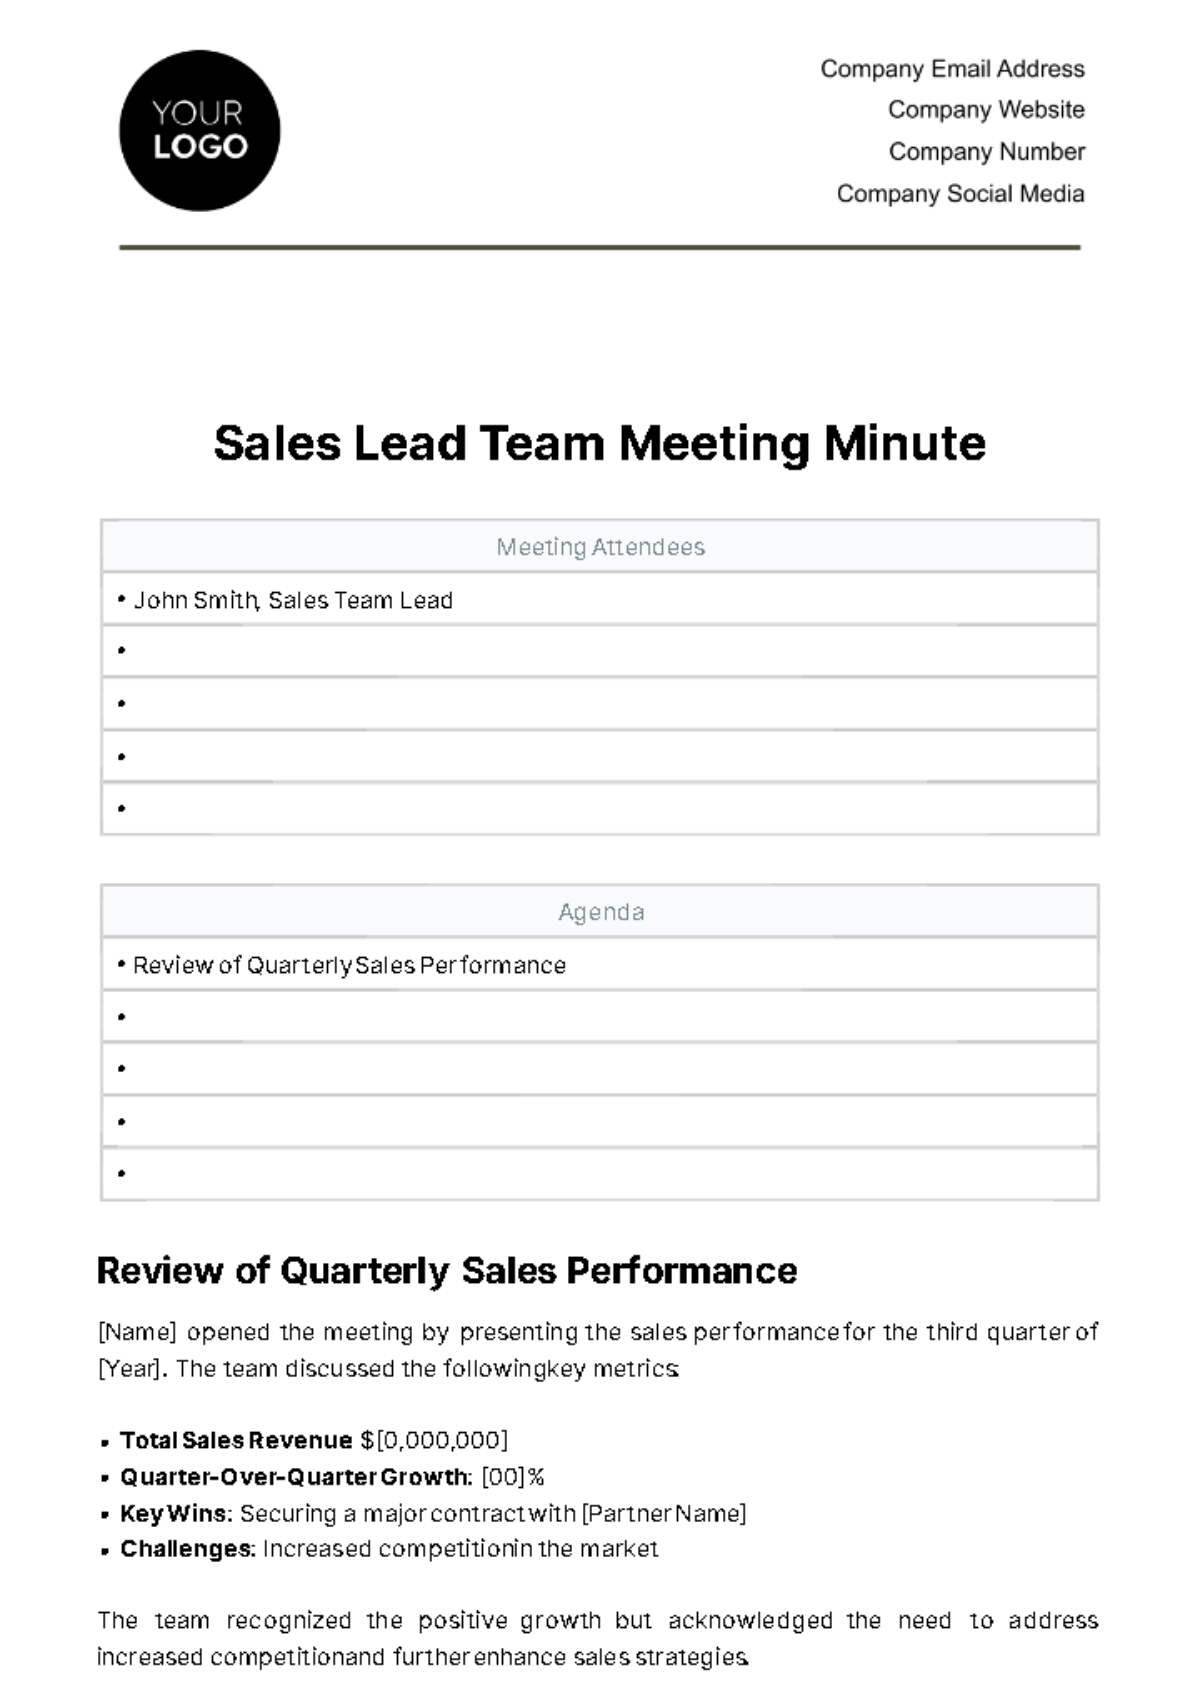 Sales Lead Team Meeting Minute Template